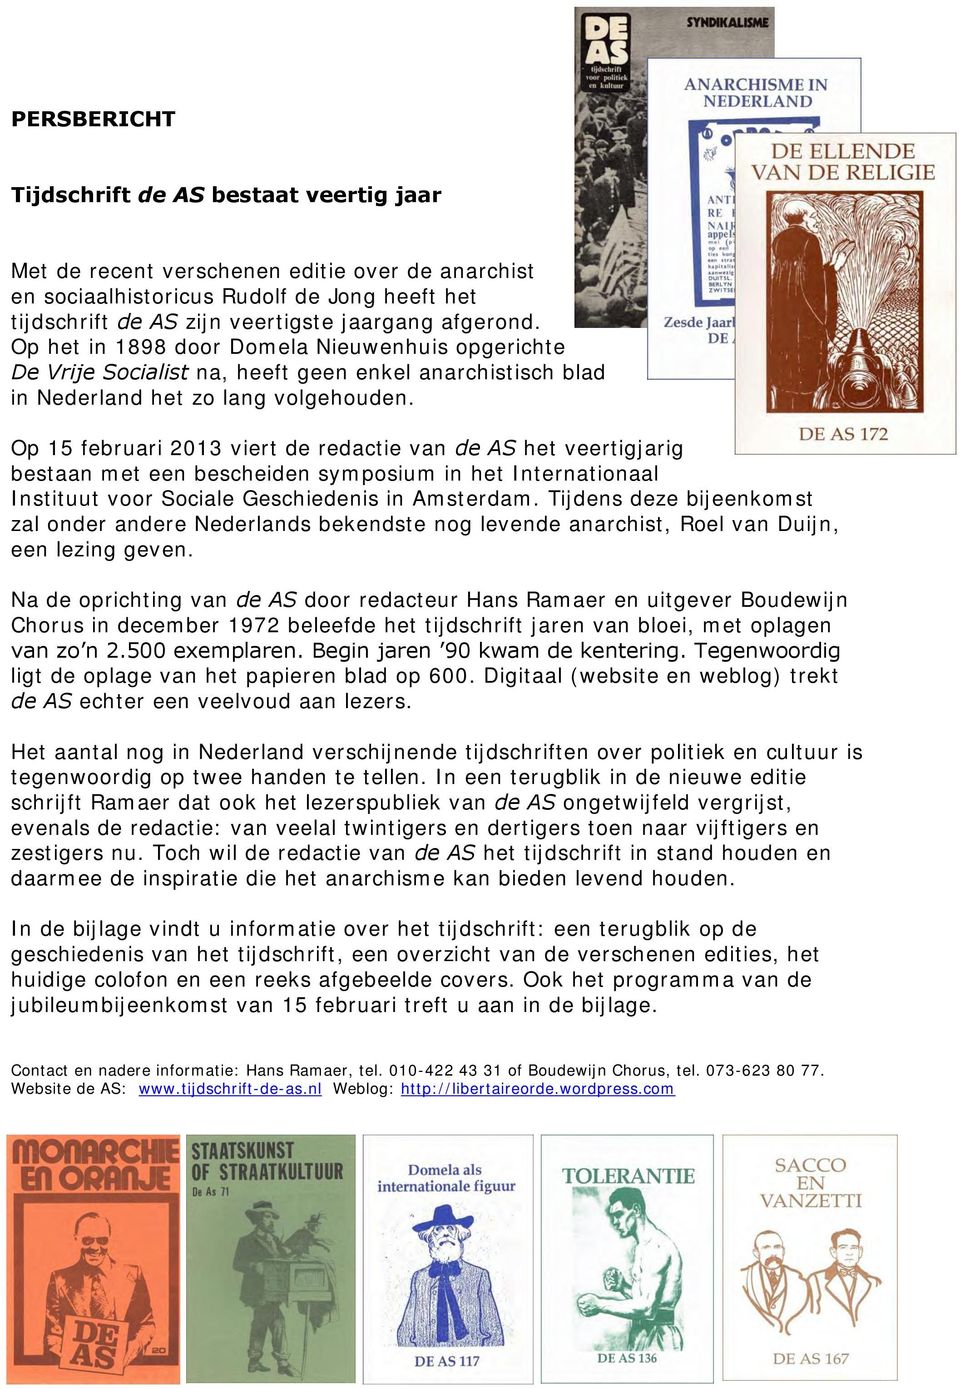 Op 15 februari 2013 viert de redactie van de AS het veertigjarig bestaan met een bescheiden symposium in het Internationaal Instituut voor Sociale Geschiedenis in Amsterdam.